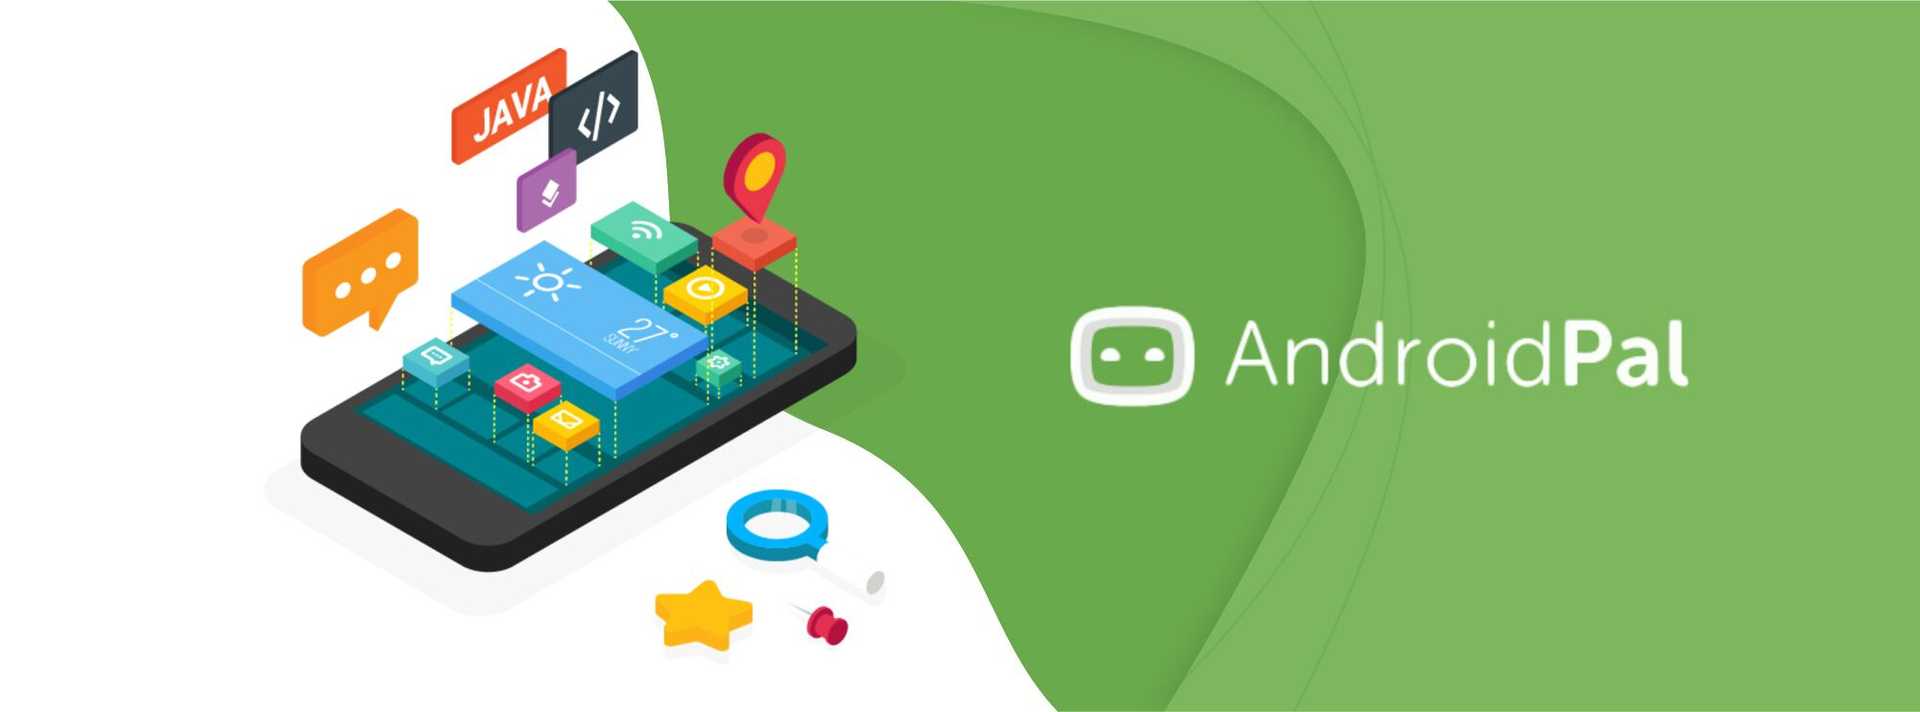 android, app development, developer tips, developer economics, developer blog, developer community, app community, android community